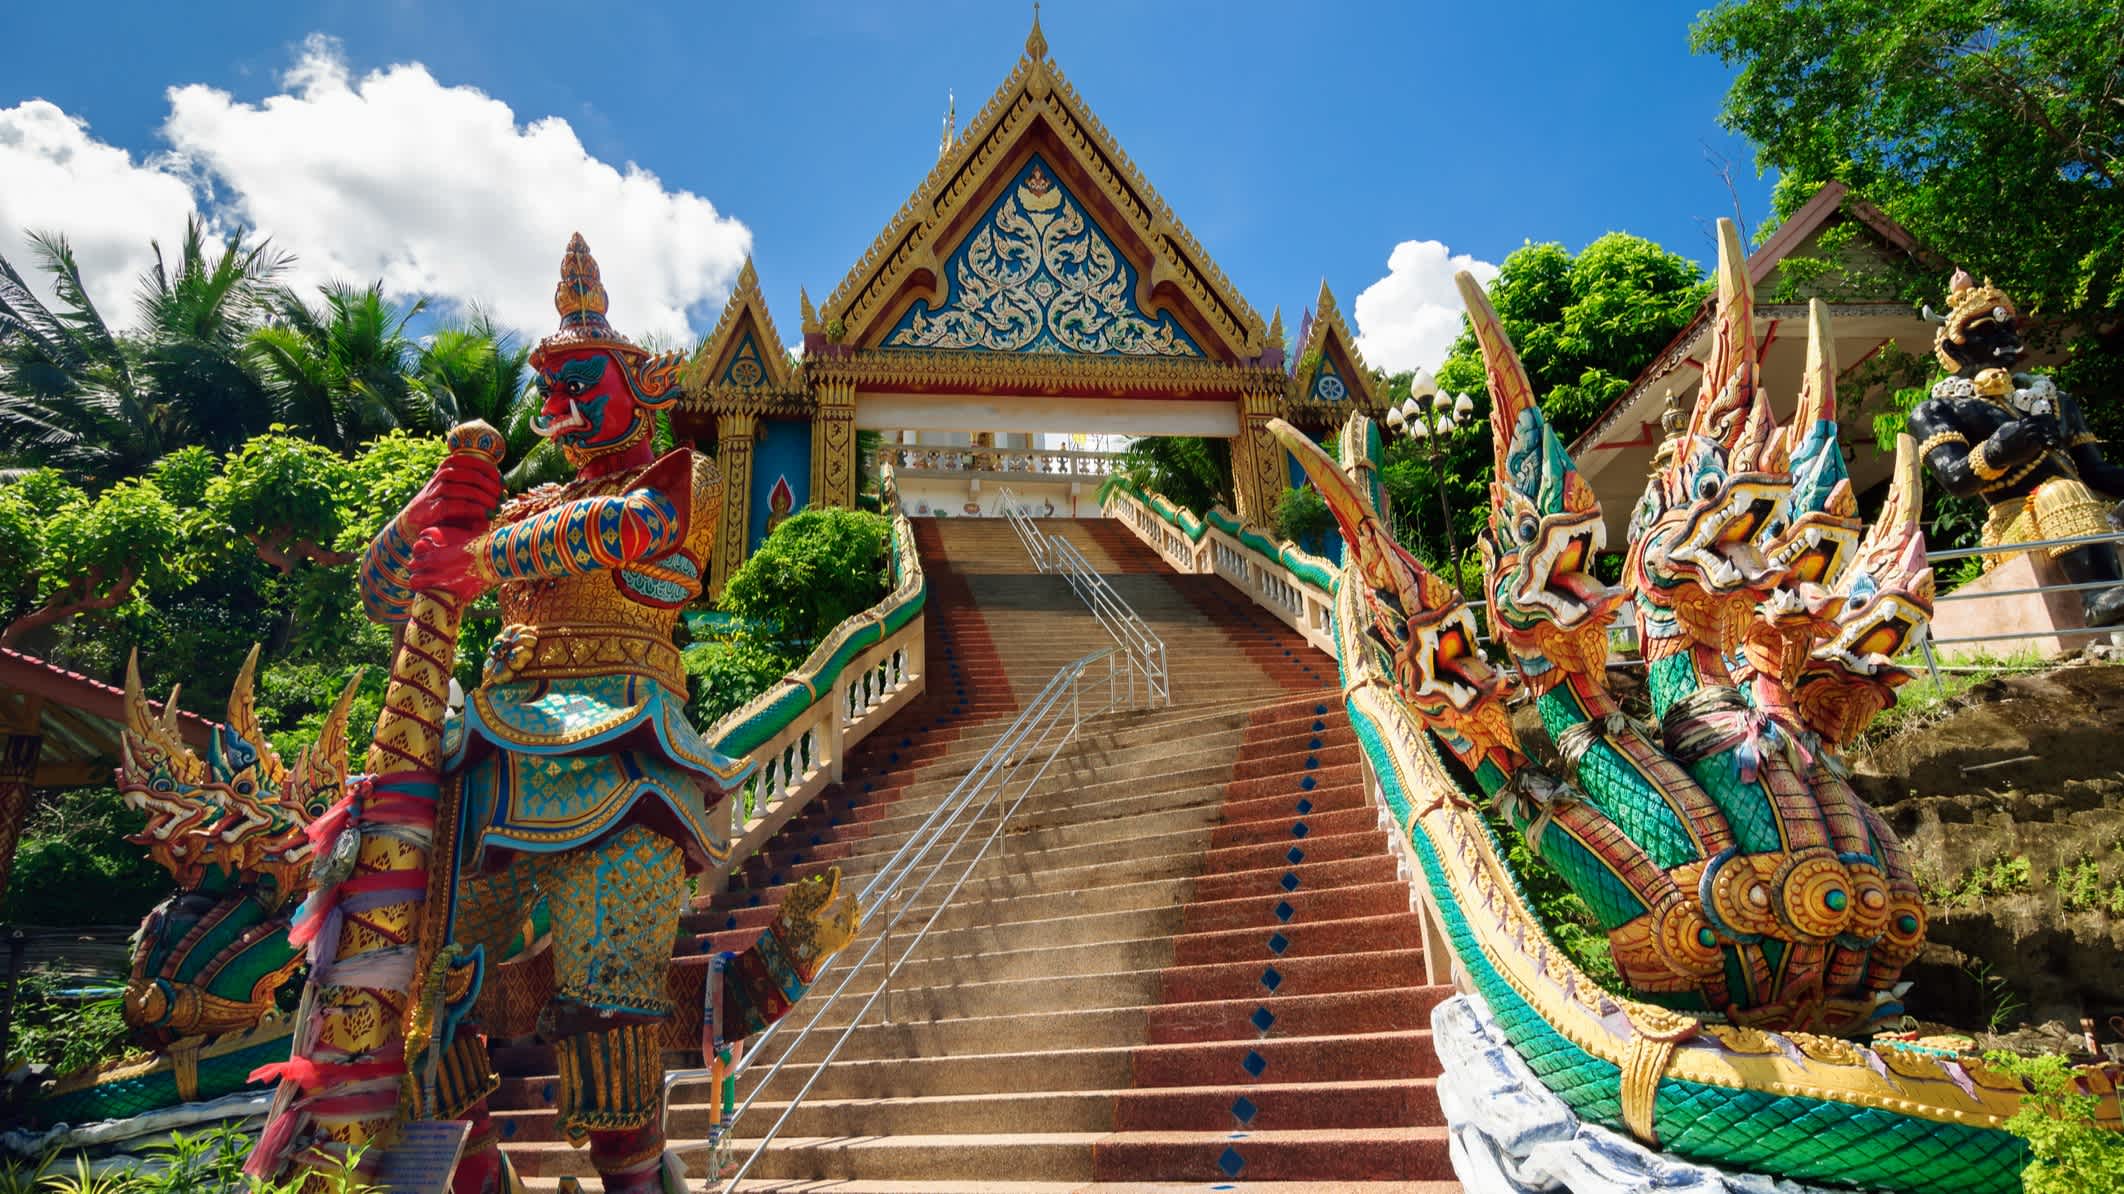 Vue du temple de Wat Khao Rang dans la ville de Phuket, Thaïlande

